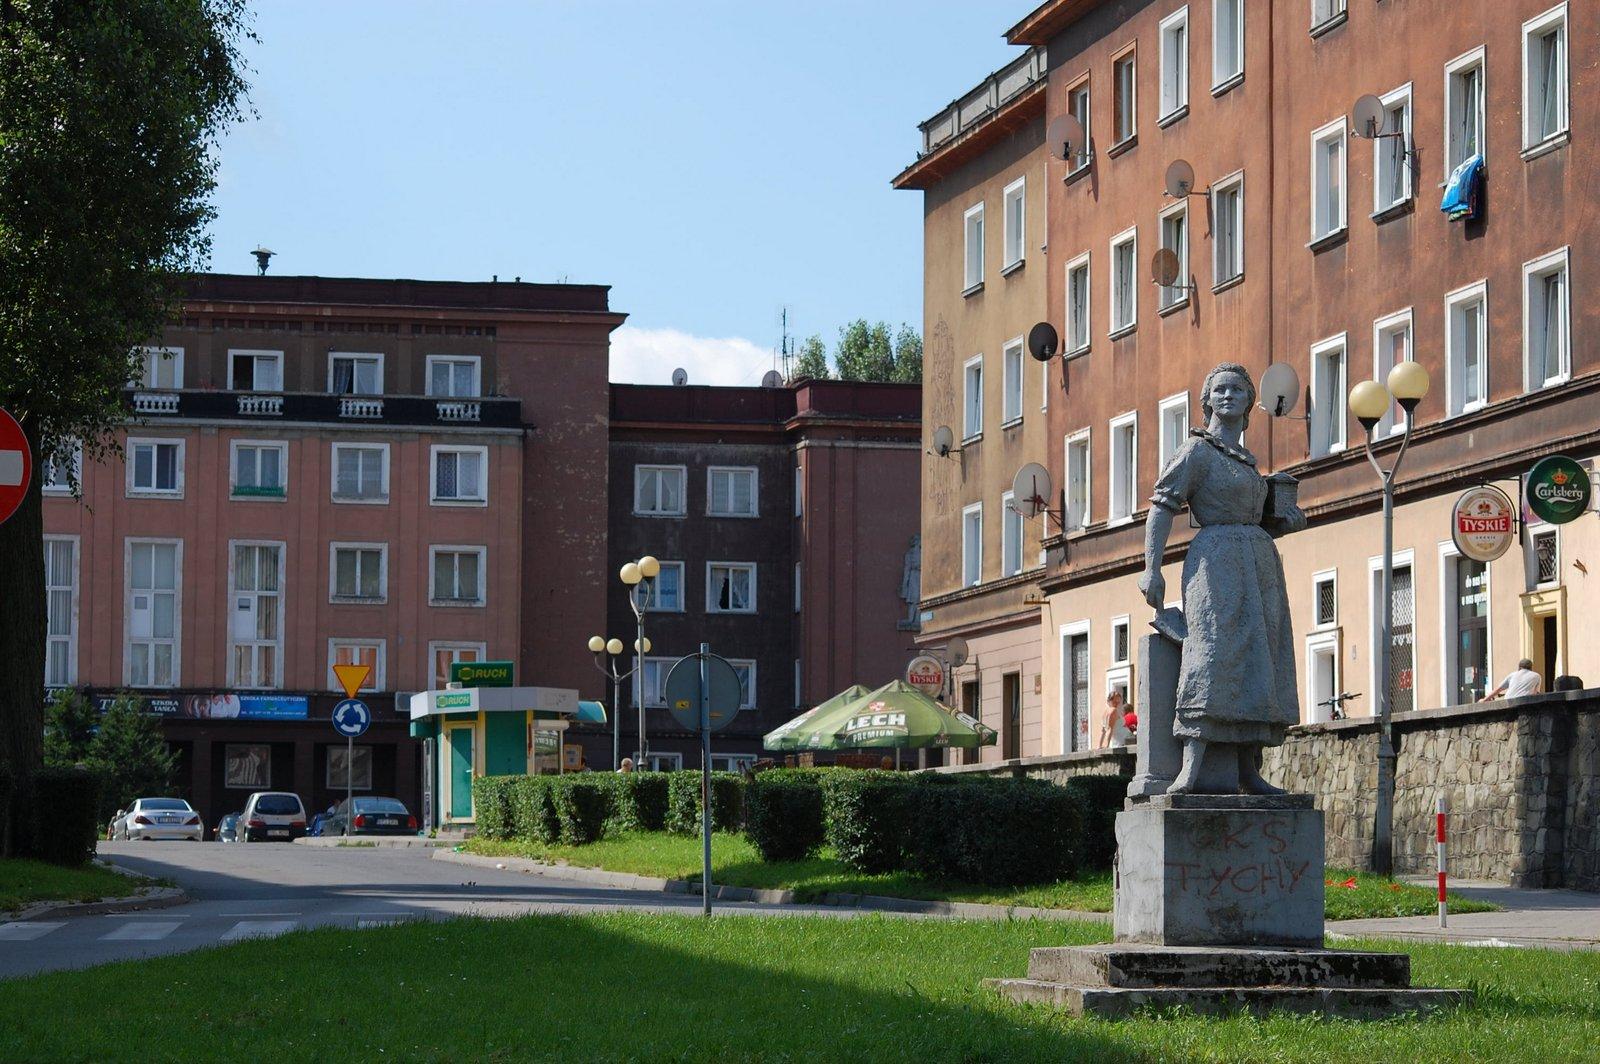 Plac centralny na osiedlu z pomnikiem na środku